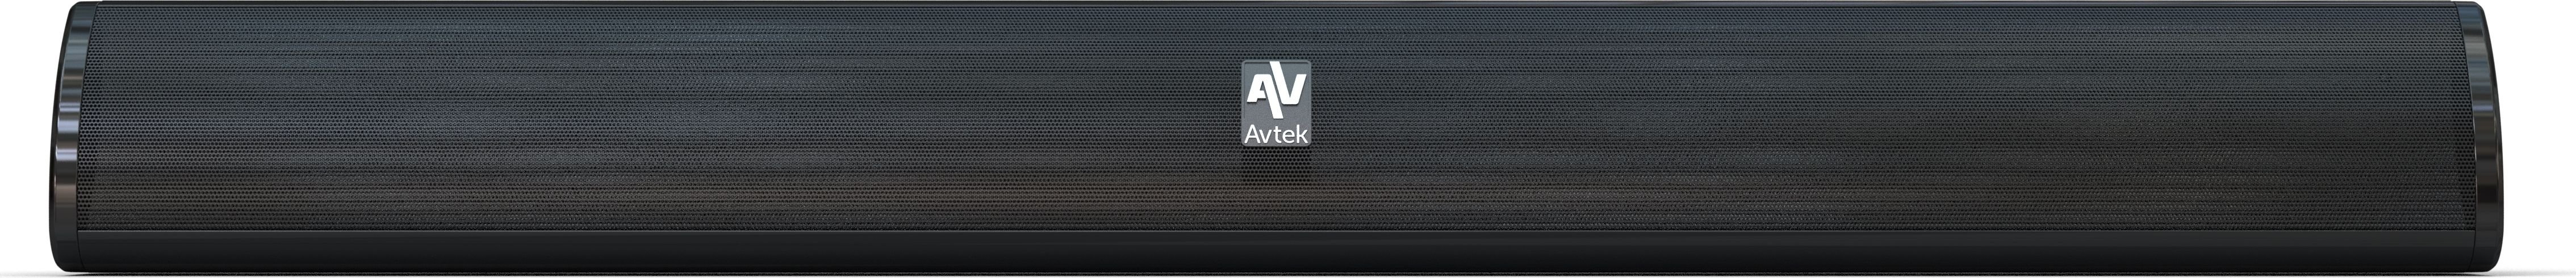 Avtek Soundbar 2.1 ver. 2